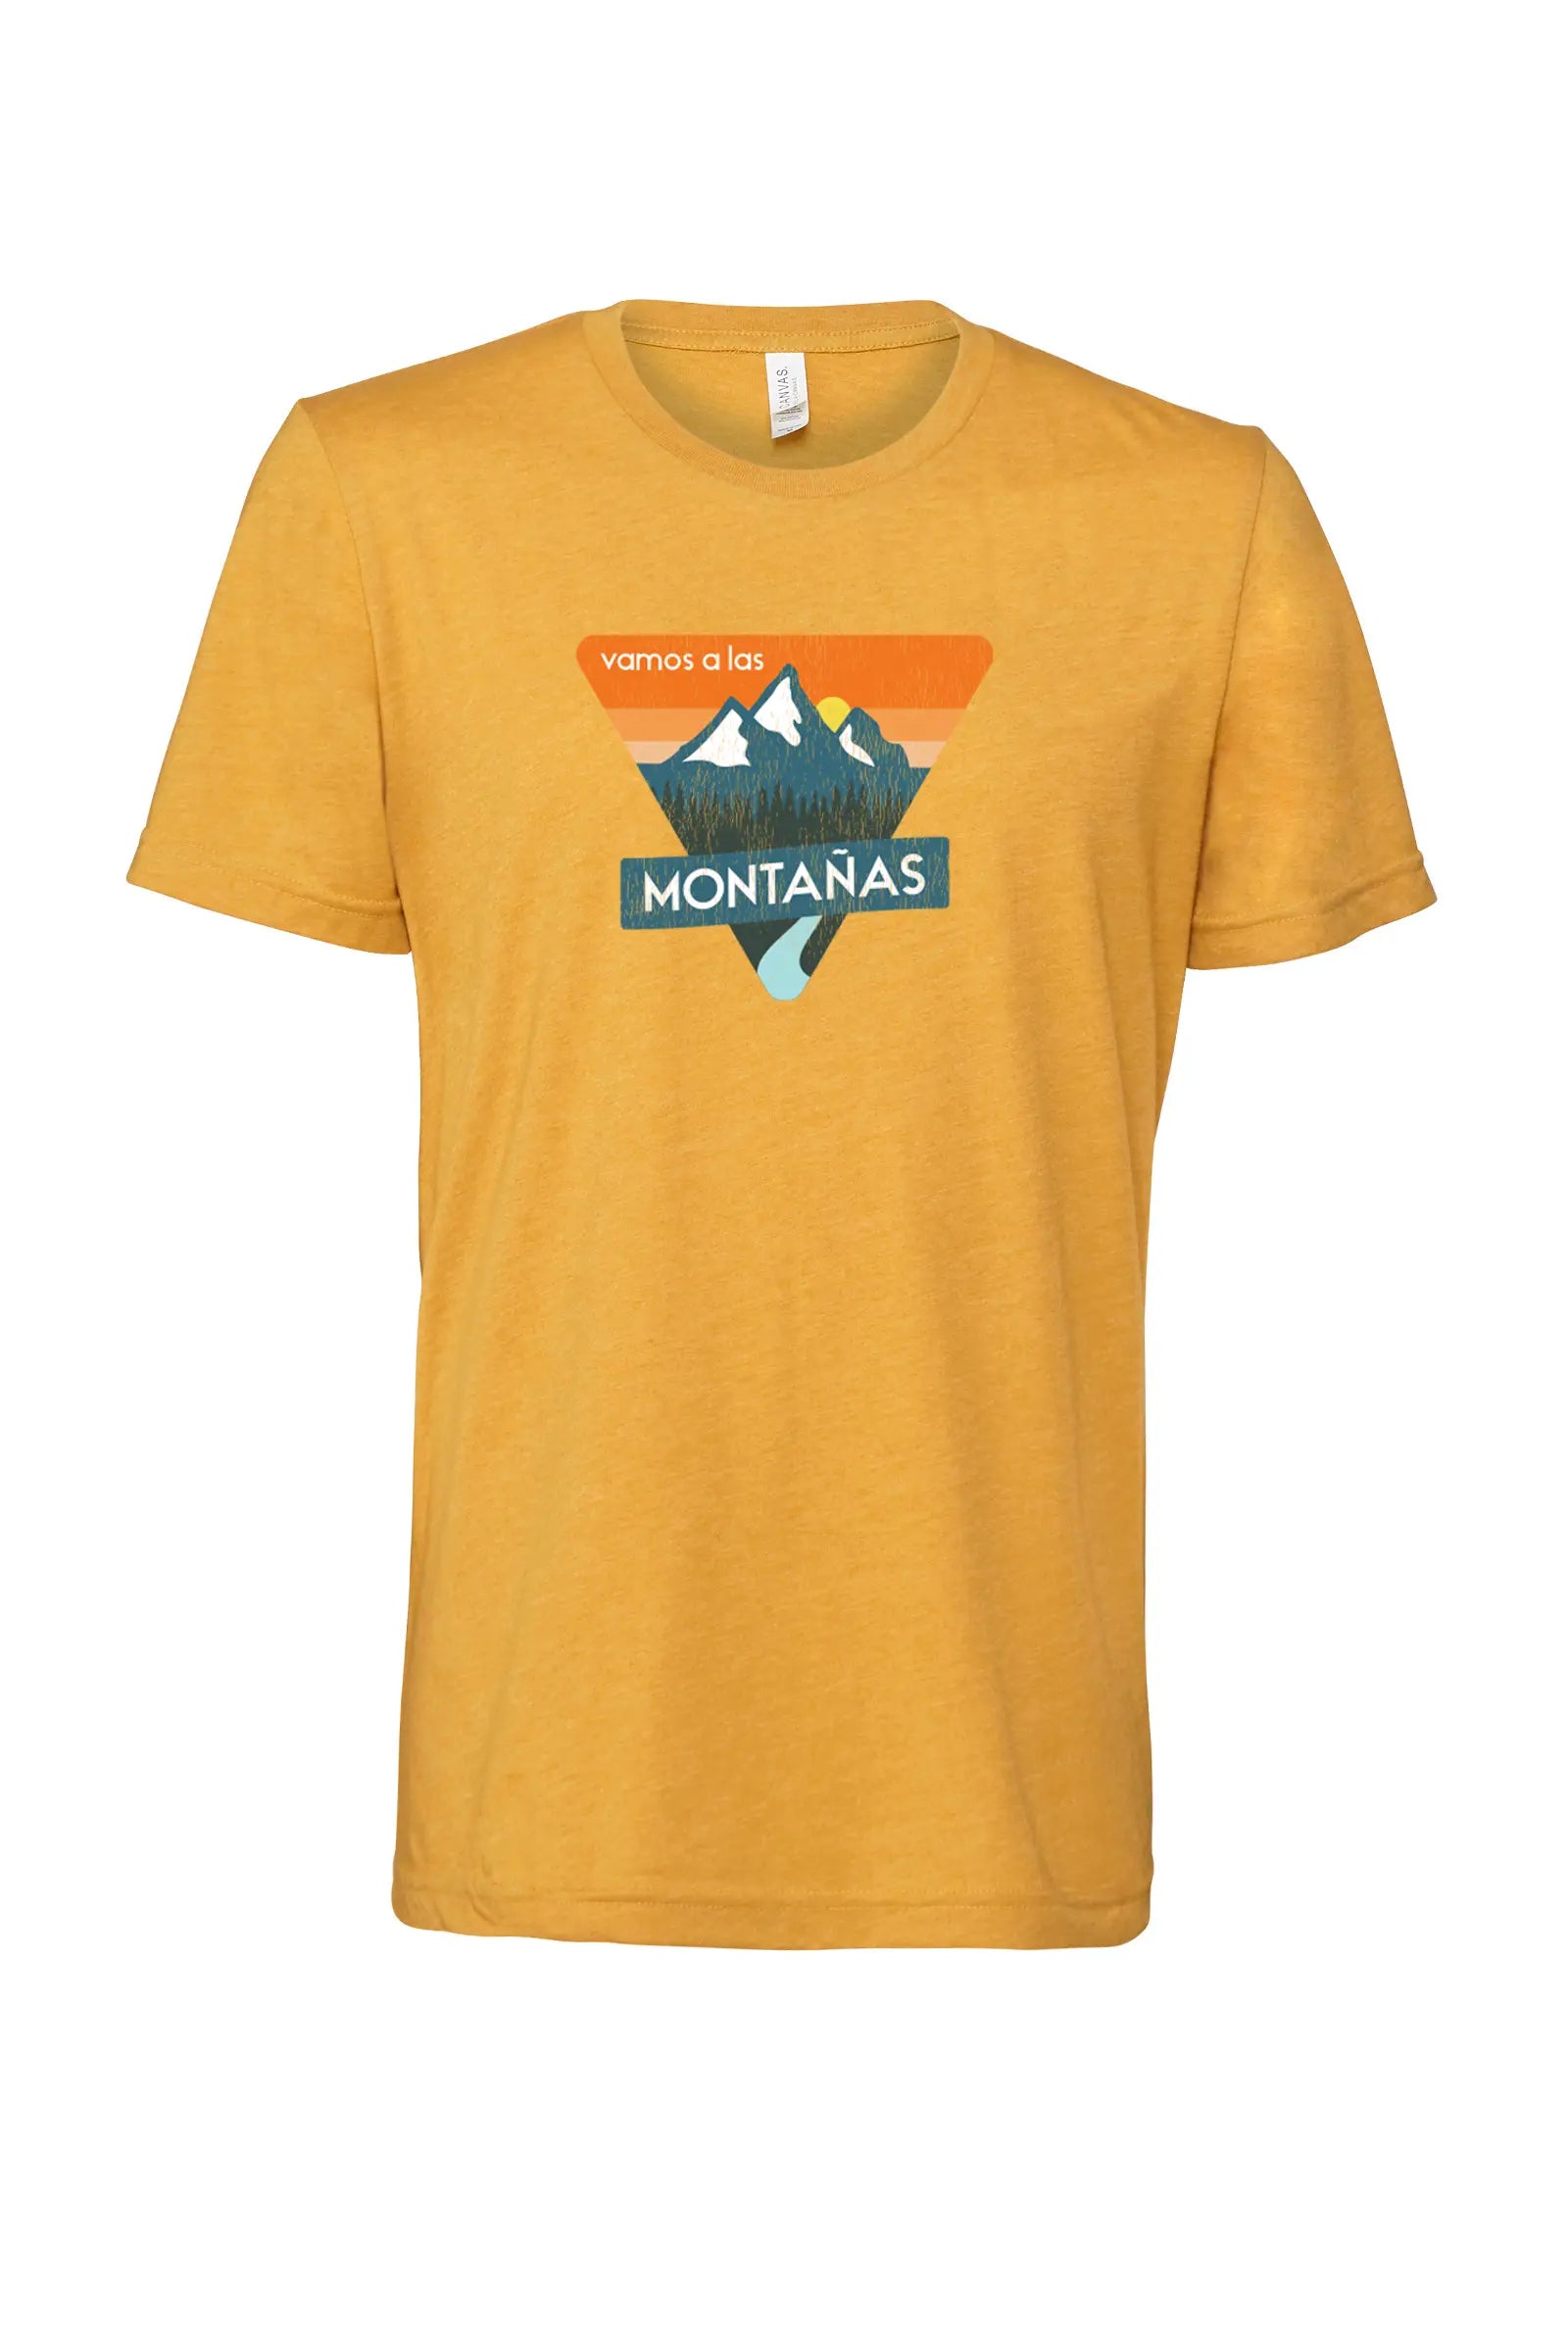 vamos a las montanas premium tee in spanish mountain theme apparel for adventure activities